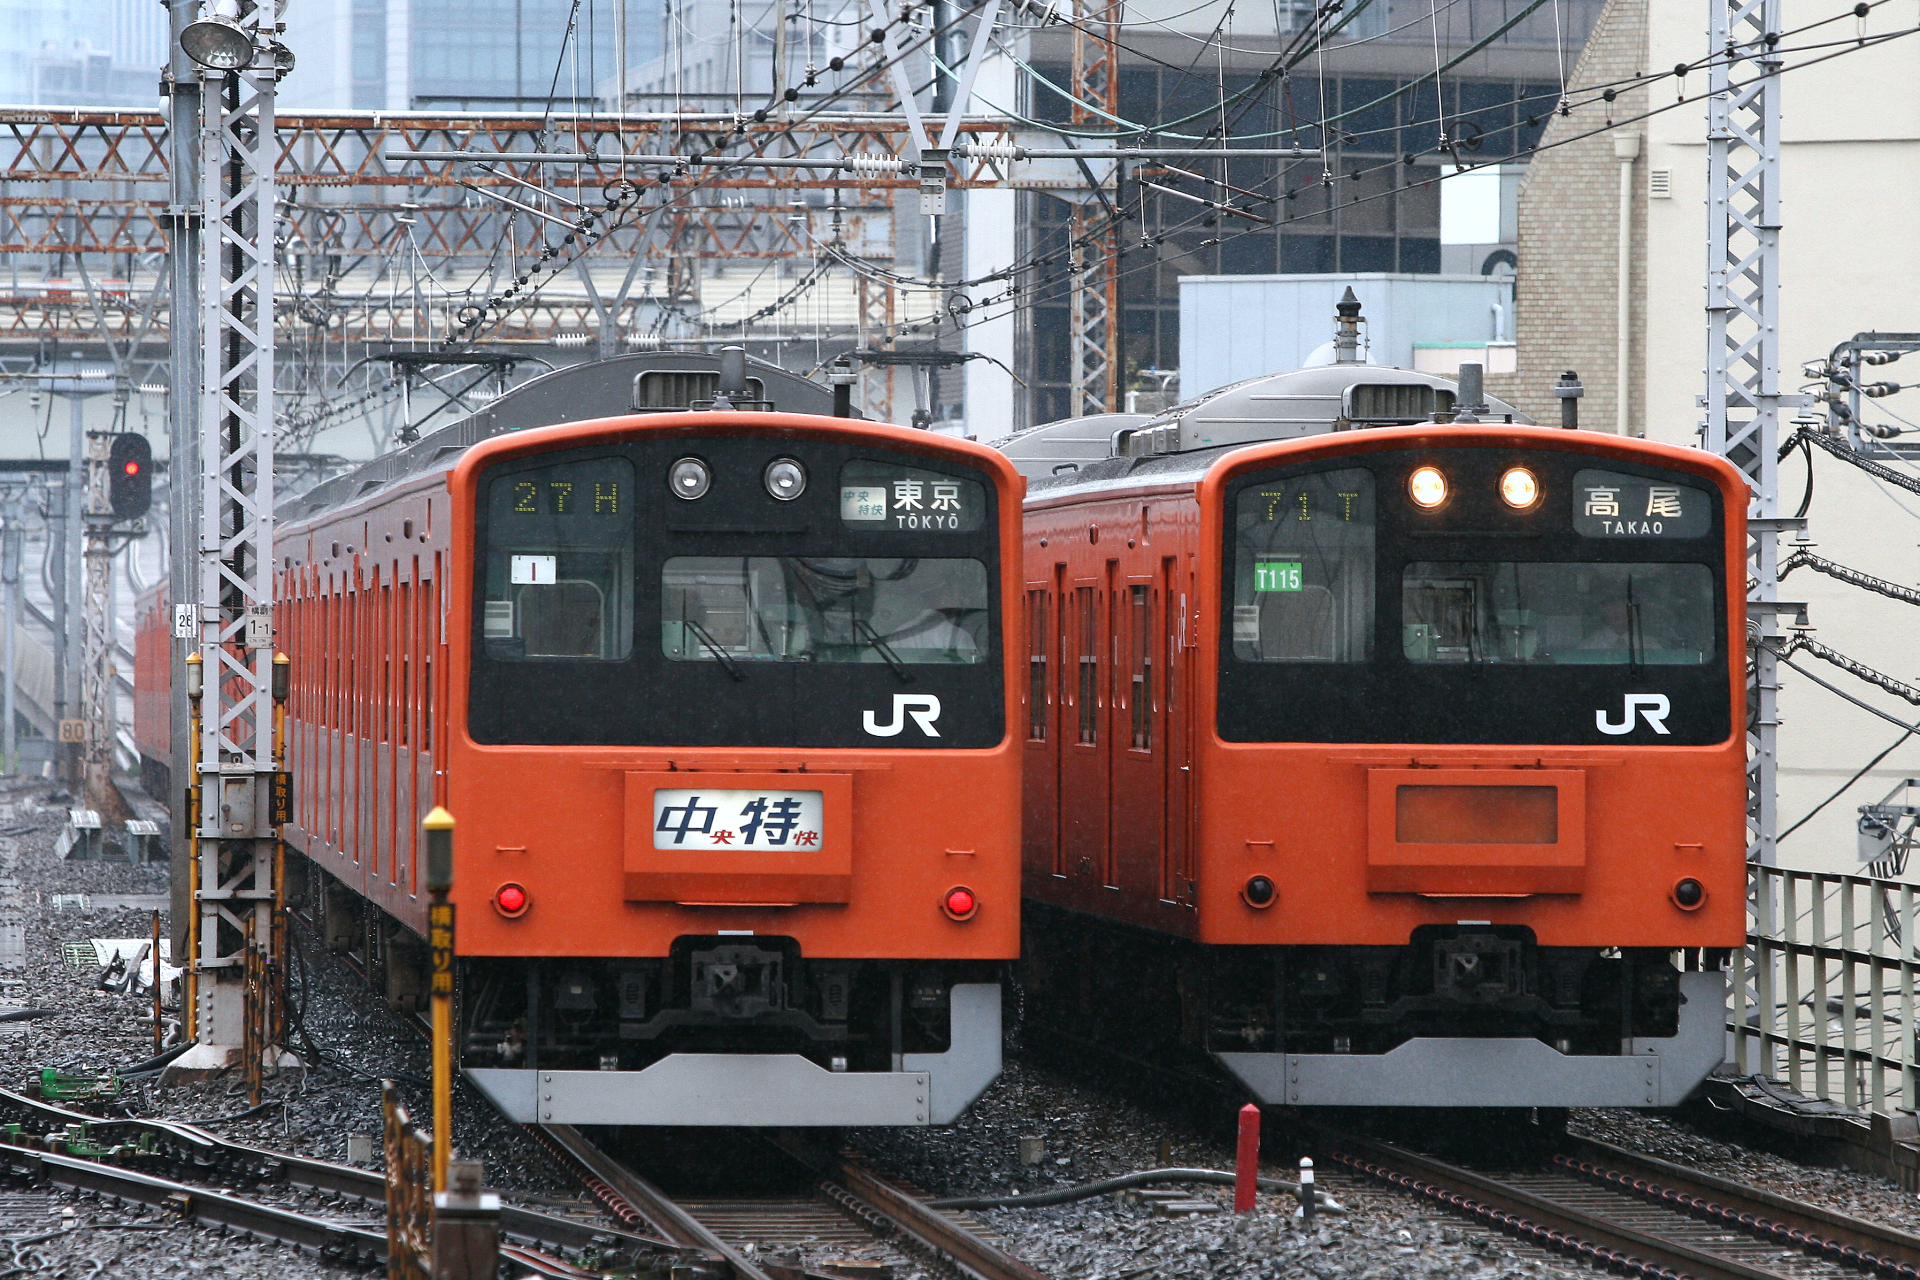 中央線を走るオレンジ色の電車 Odapedia 小田急を中心とした鉄道に関するブログメディア